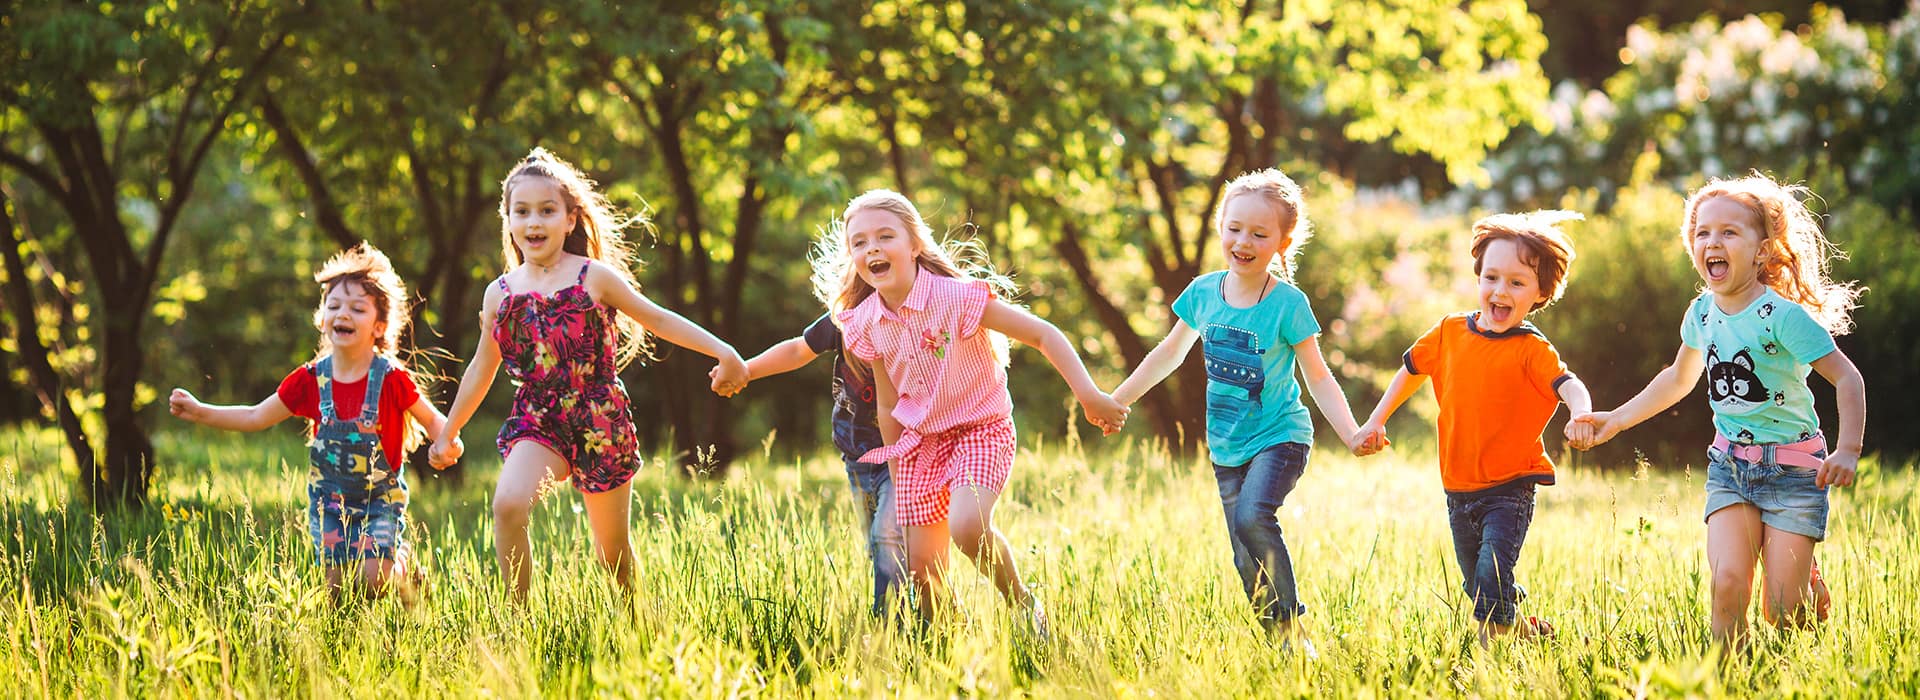 Kinder laufen Hand in Hand lachend auf einem Feld mit Bäumen im Hintergrund und Sonnenschein